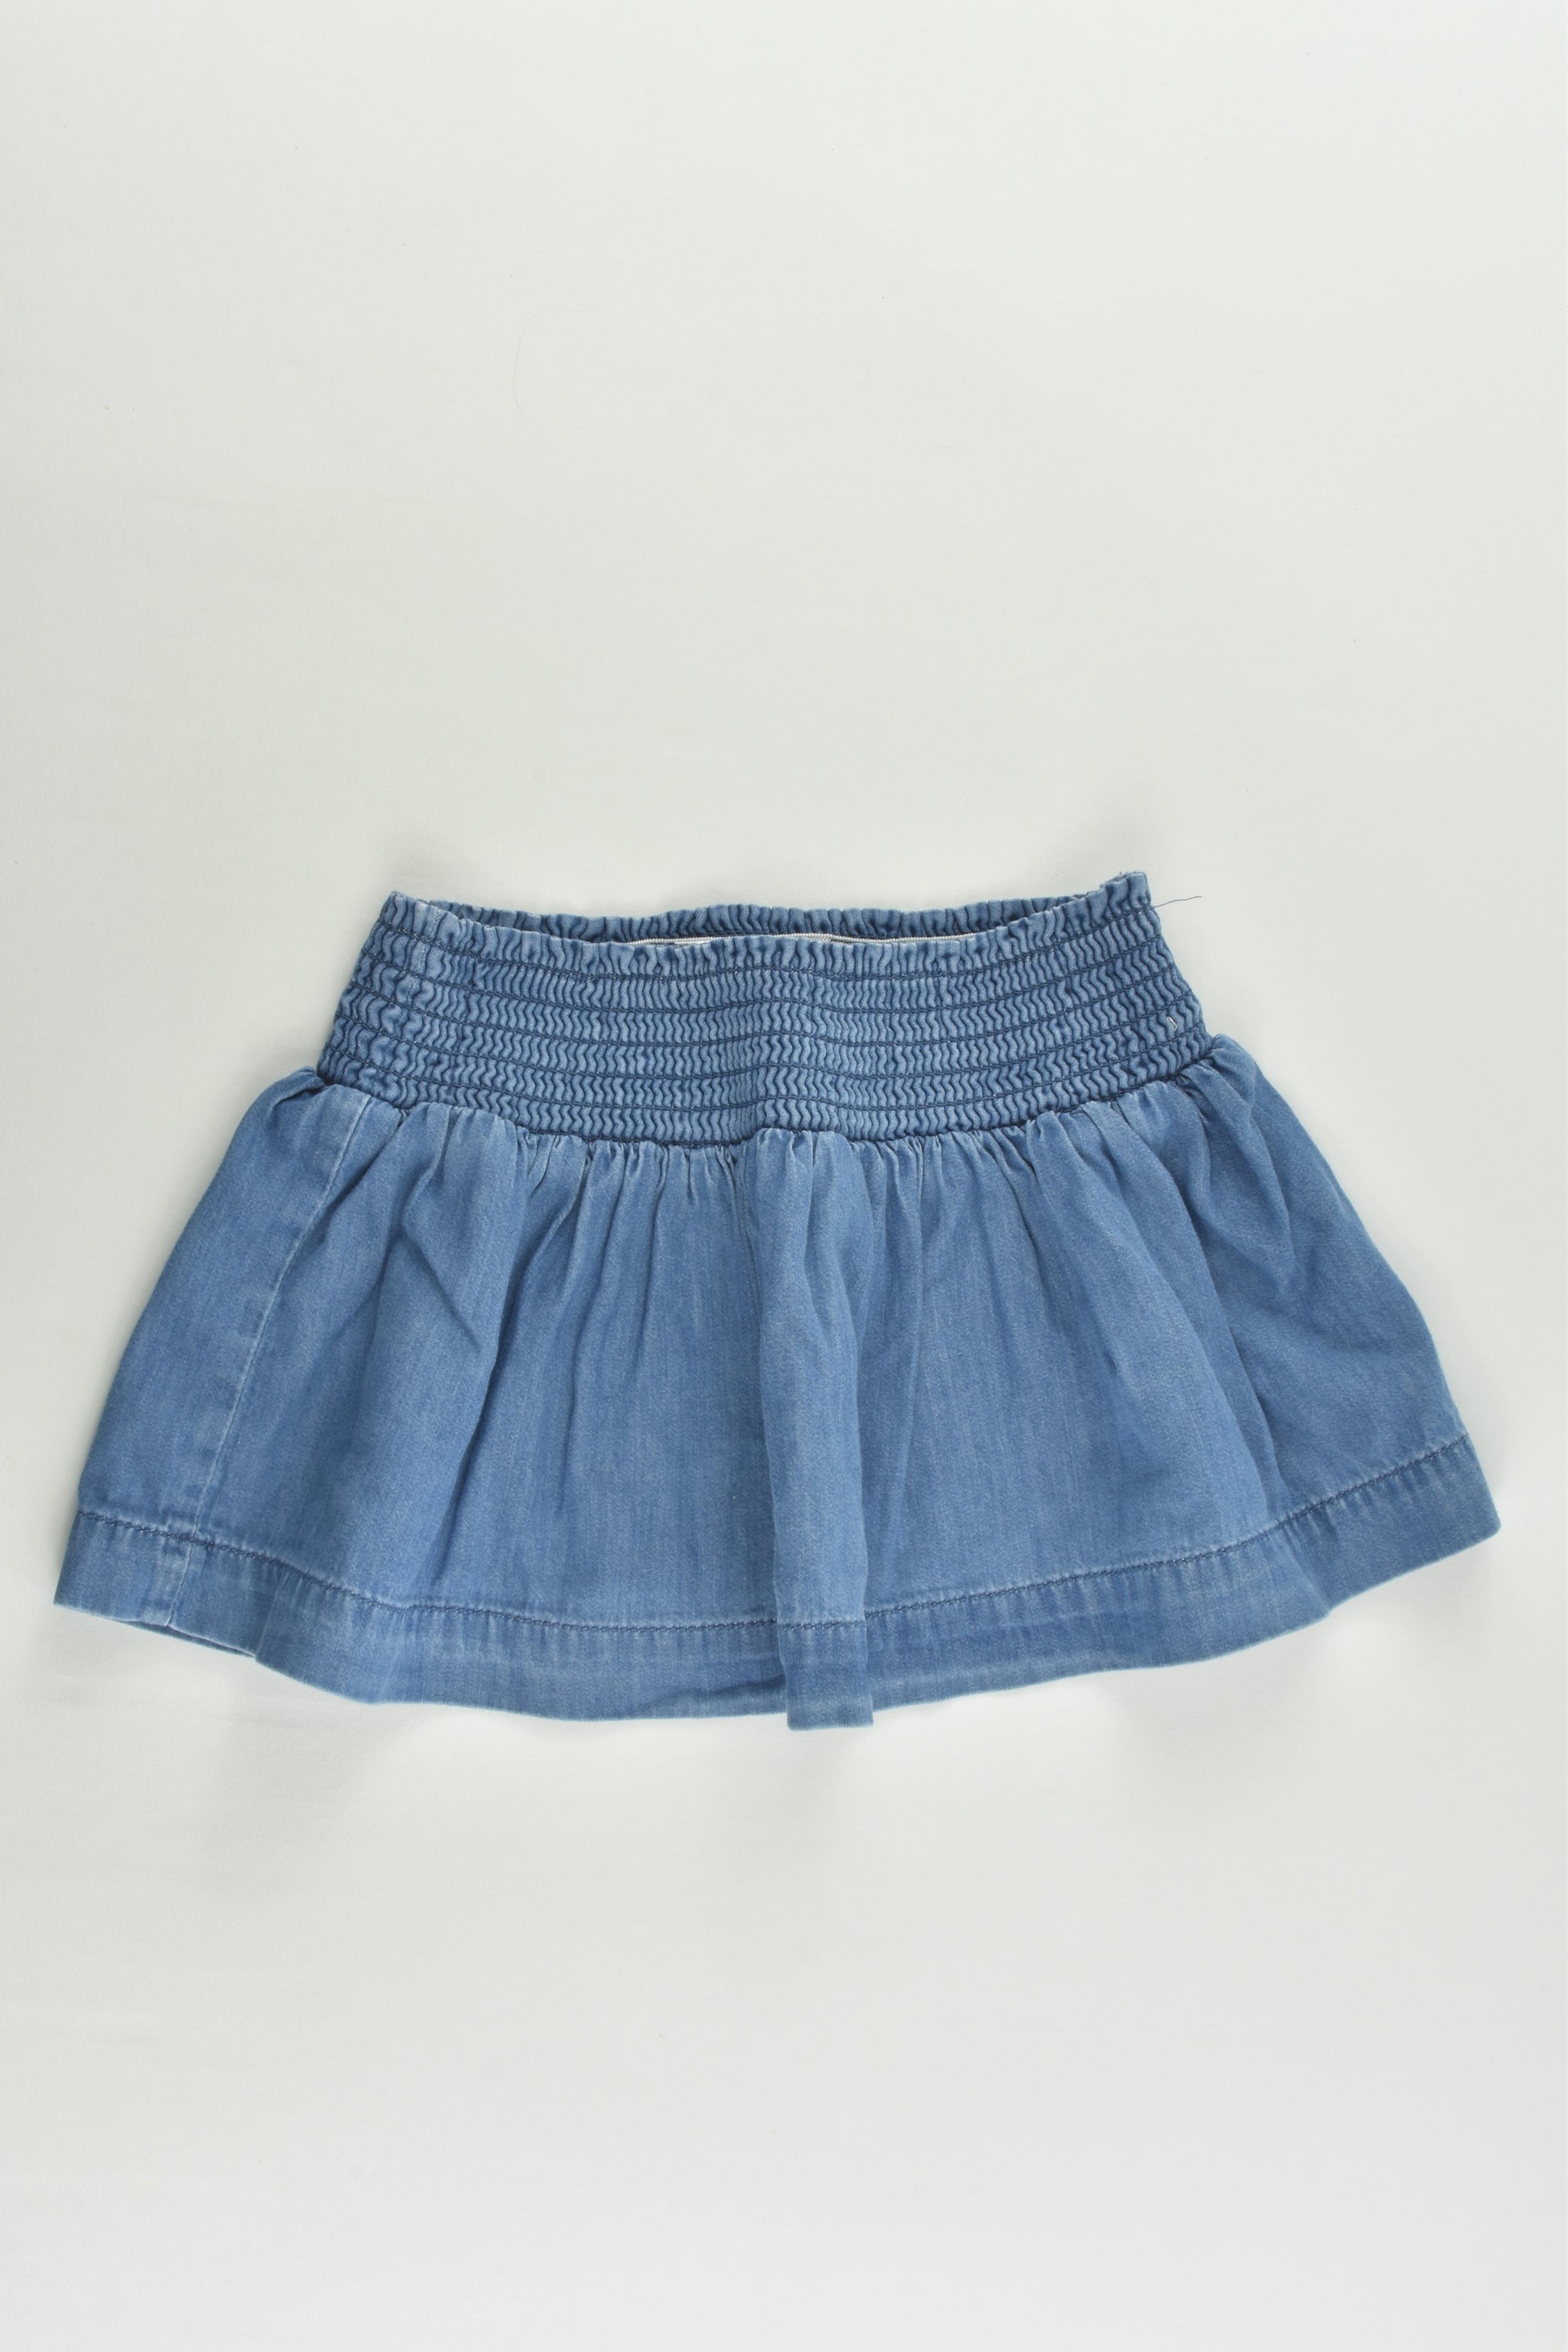 Kids & Co Size 1 Lightweight Denim Skirt